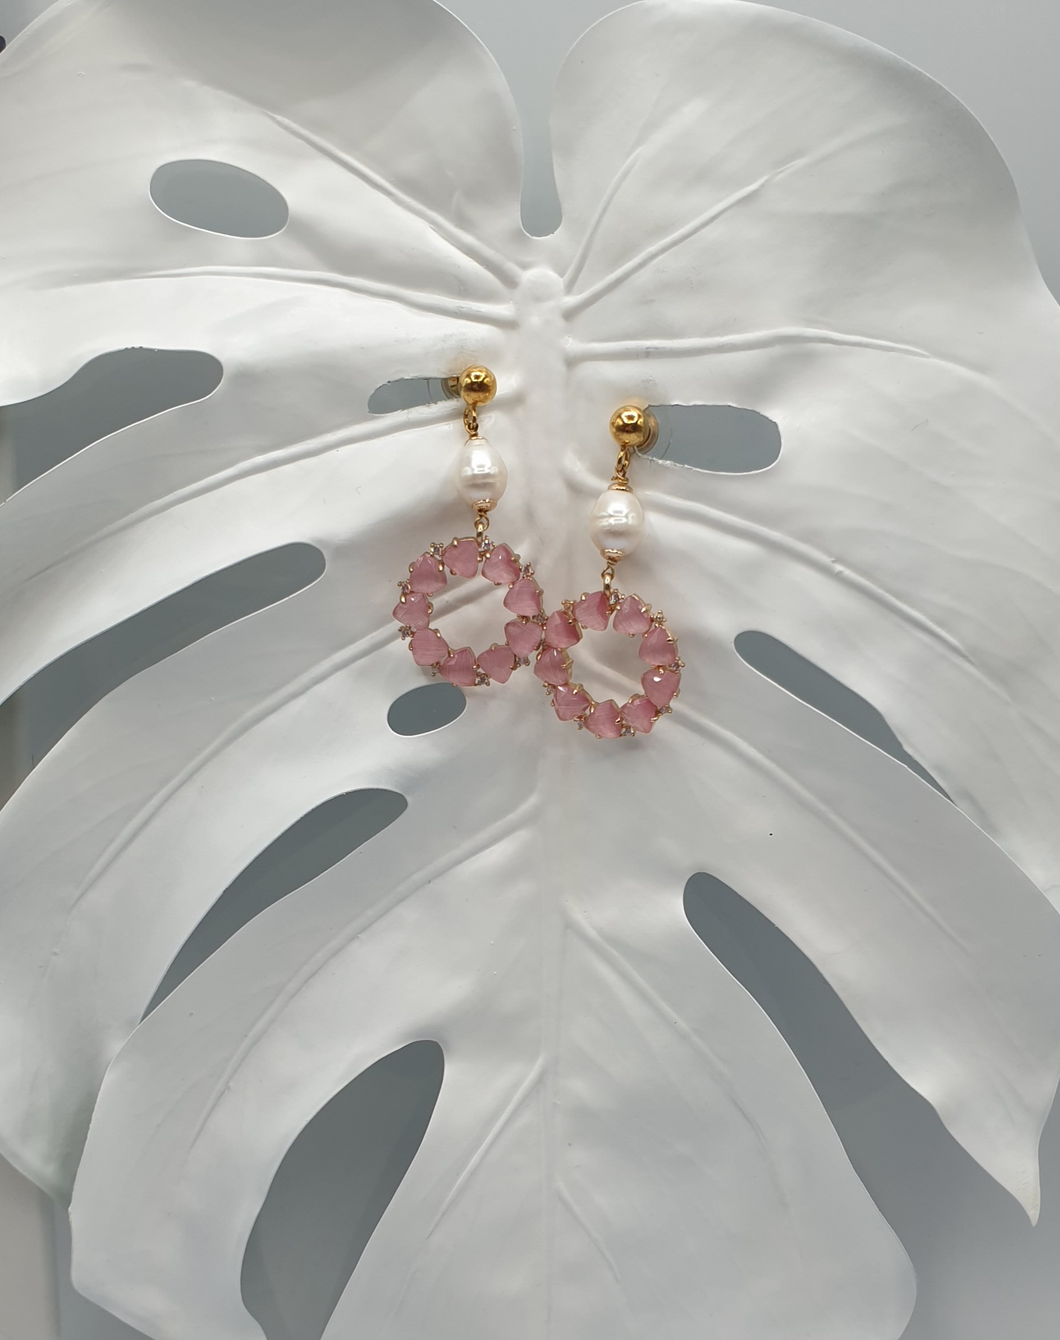 Ohrstecker aus vergoldetem Silber mit Perlen und rosa Strasssteinen